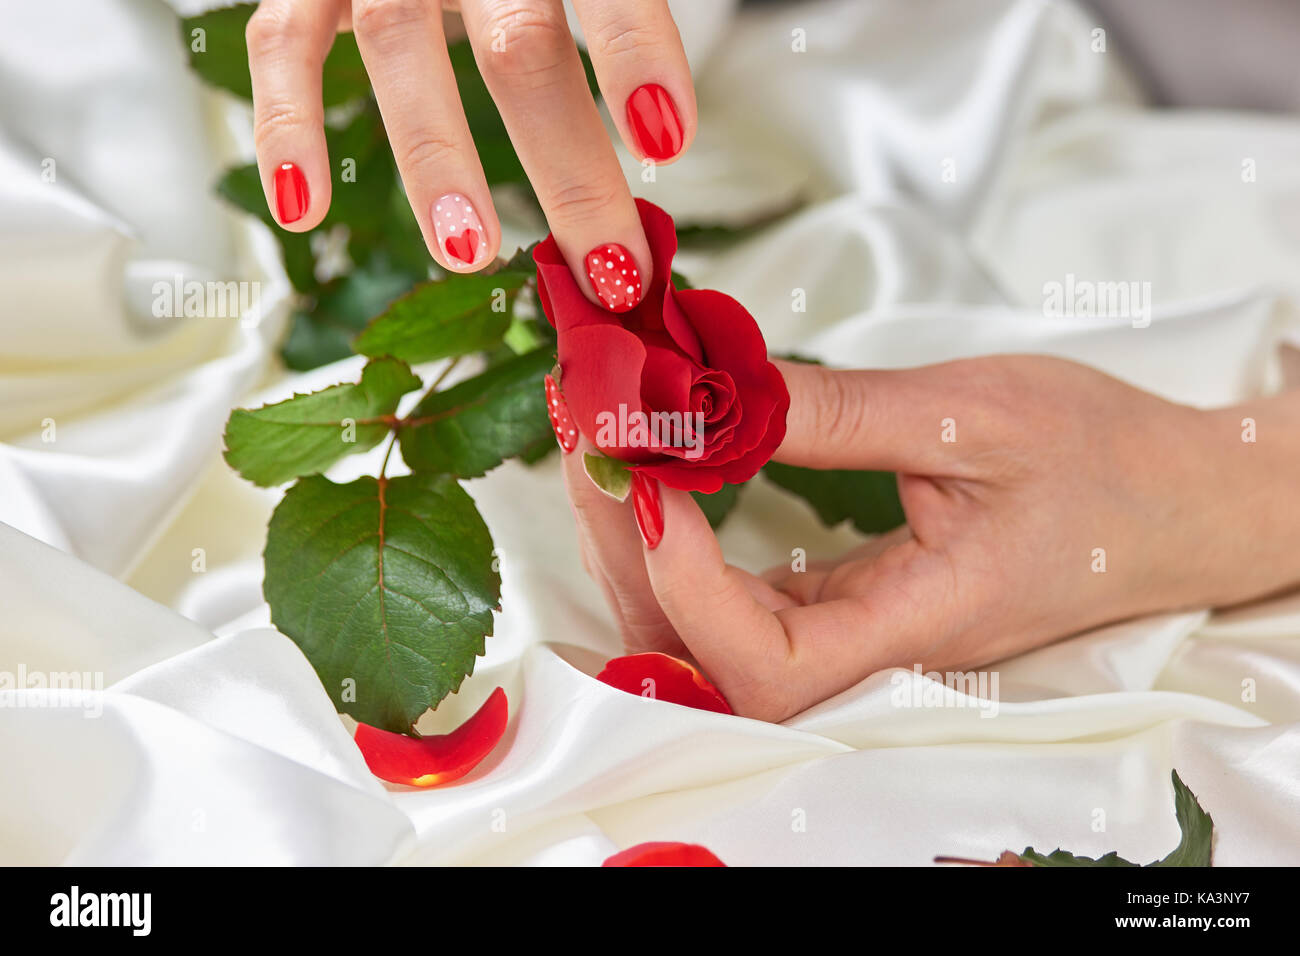 Mani con unghie curate e rosa rossa. mano femmina con unghie rosse di strappare i petali di rosa rosso su bianco seta. Foto Stock